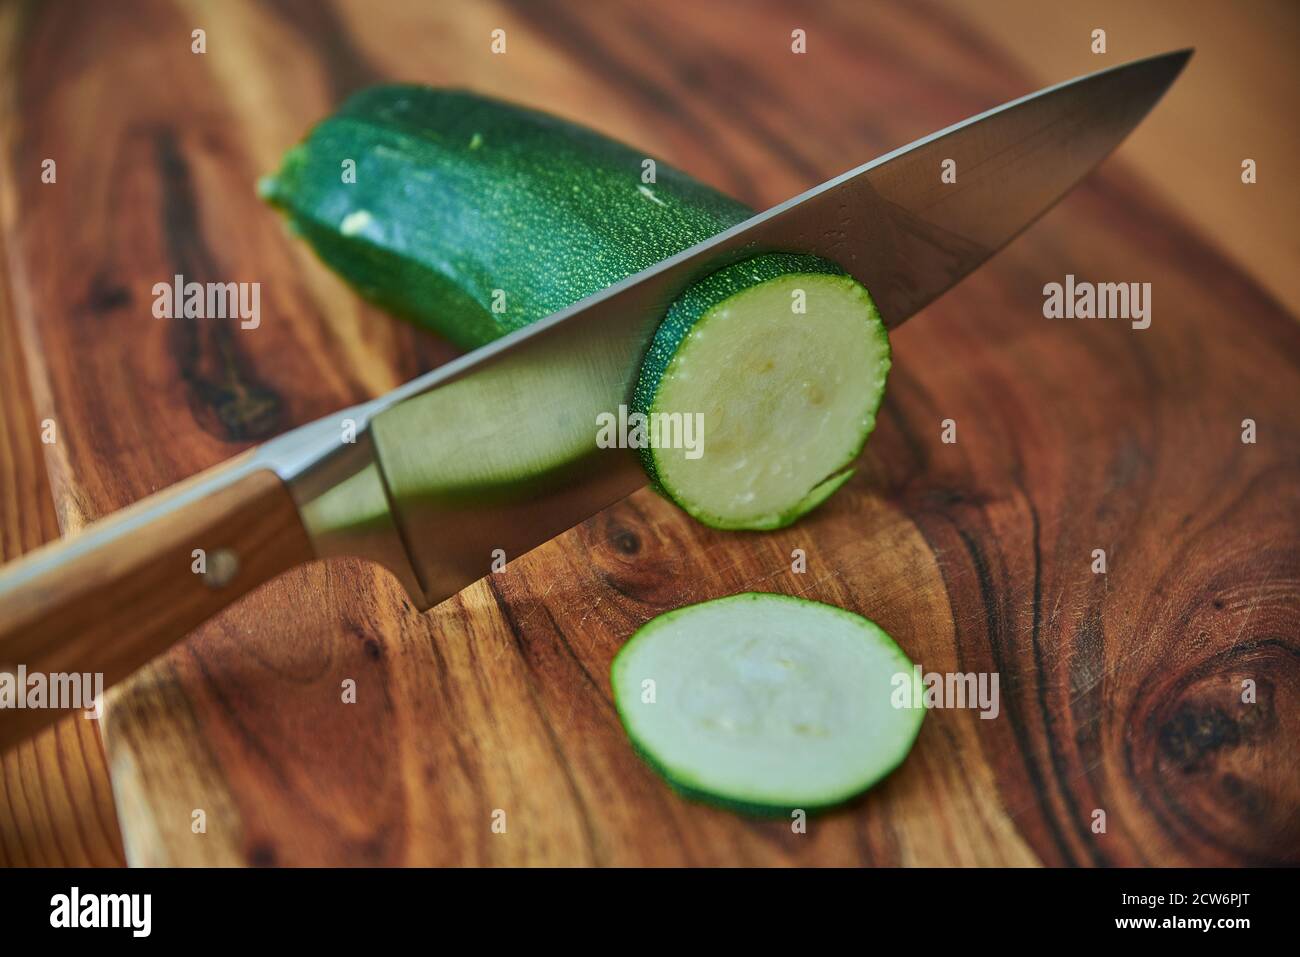 Holzschneidebrett mit frischem Gemüse und einem Kochmesser. Gemüse auf einem Holzschneidebrett hacken. Stockfoto